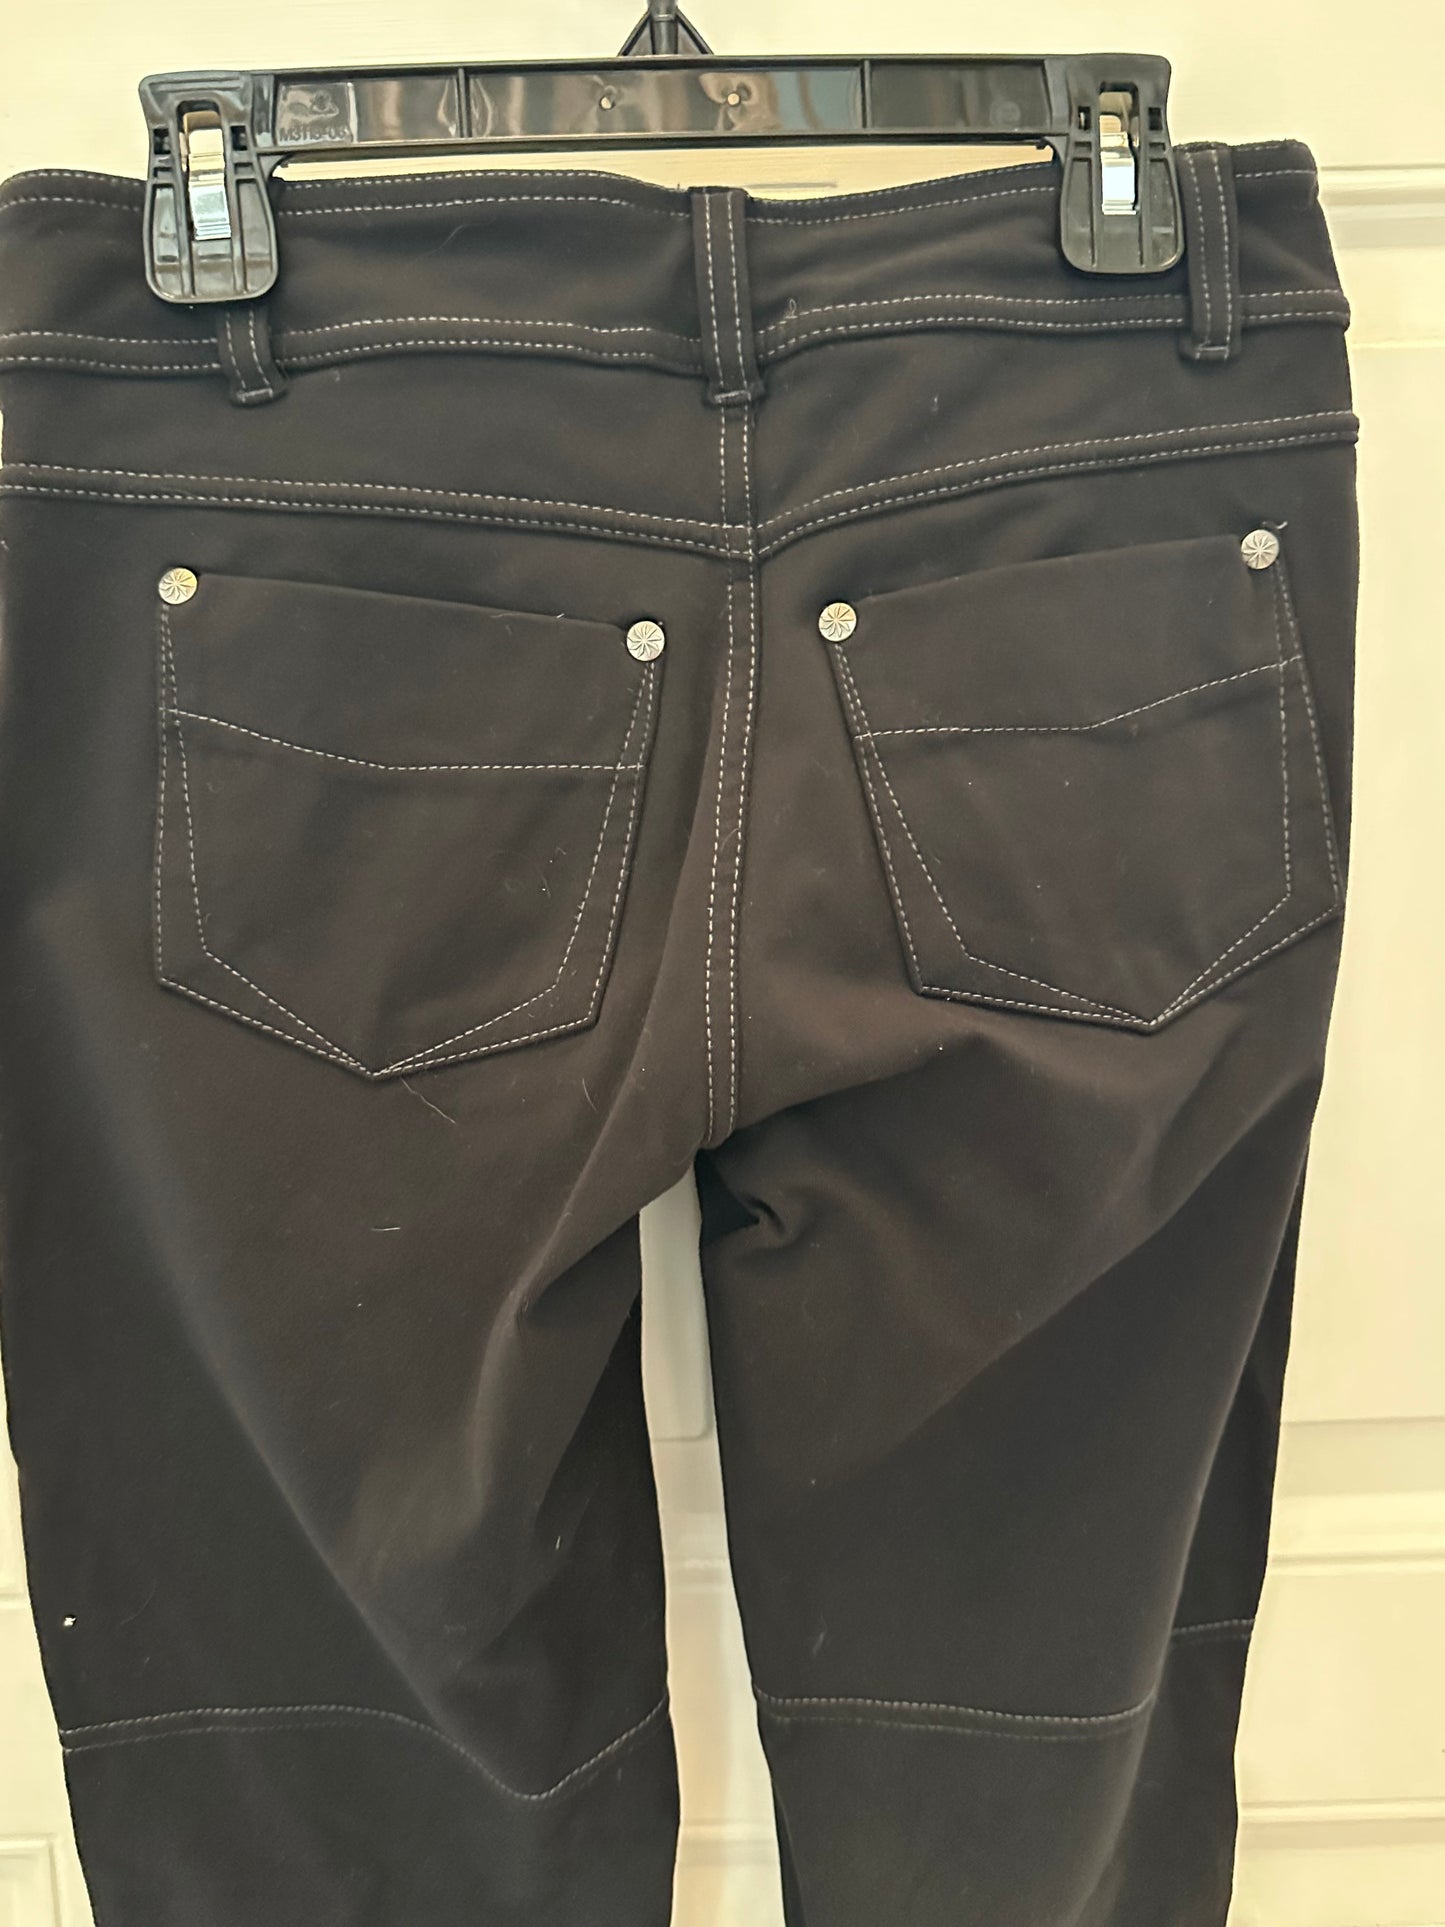 Athleta Black Pants Sz XSmall Full Length Pockets